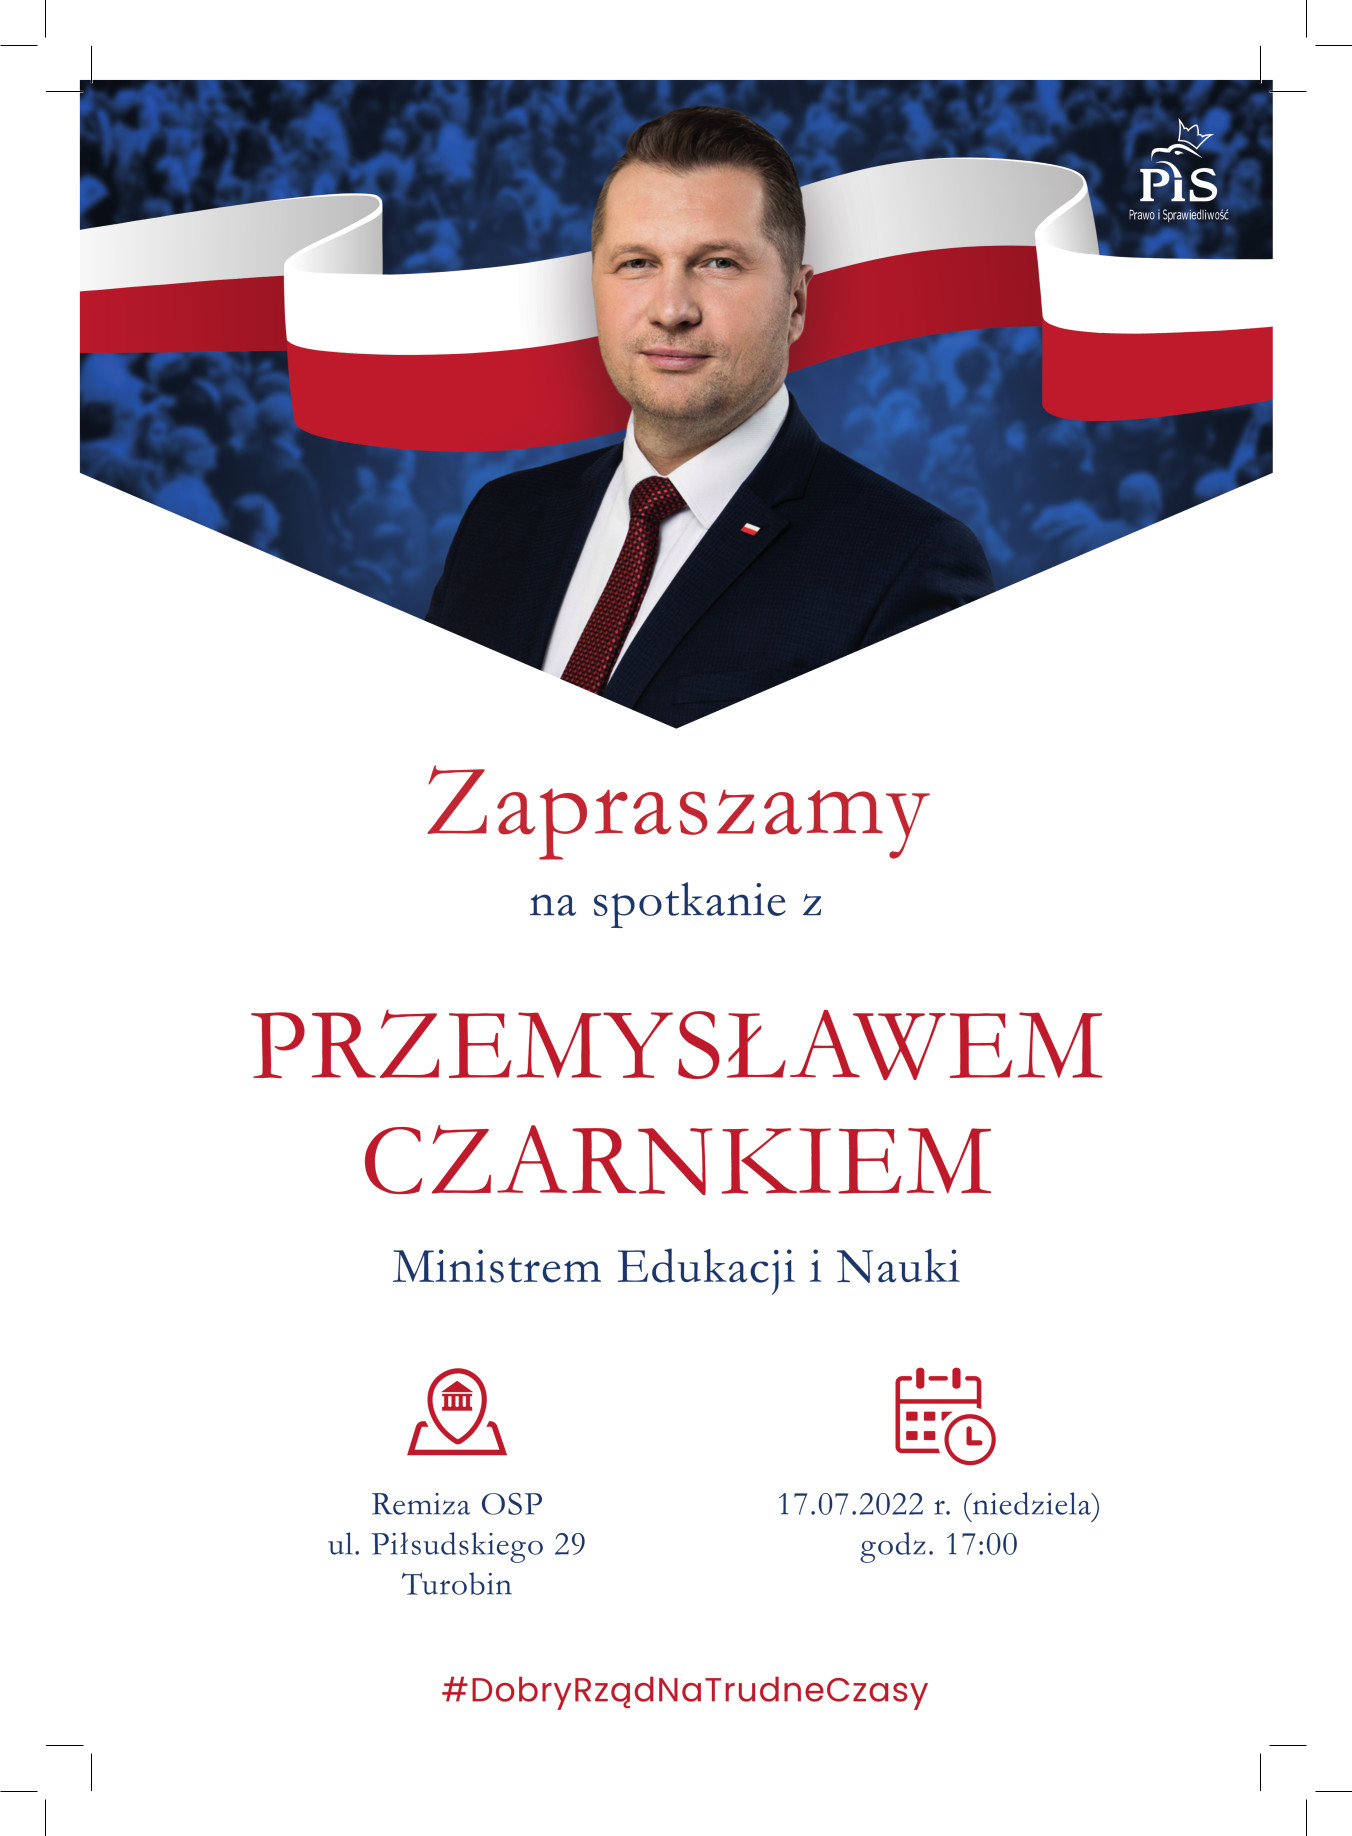 Przemysław Czarnek, spotkanie, Turobin, plakat